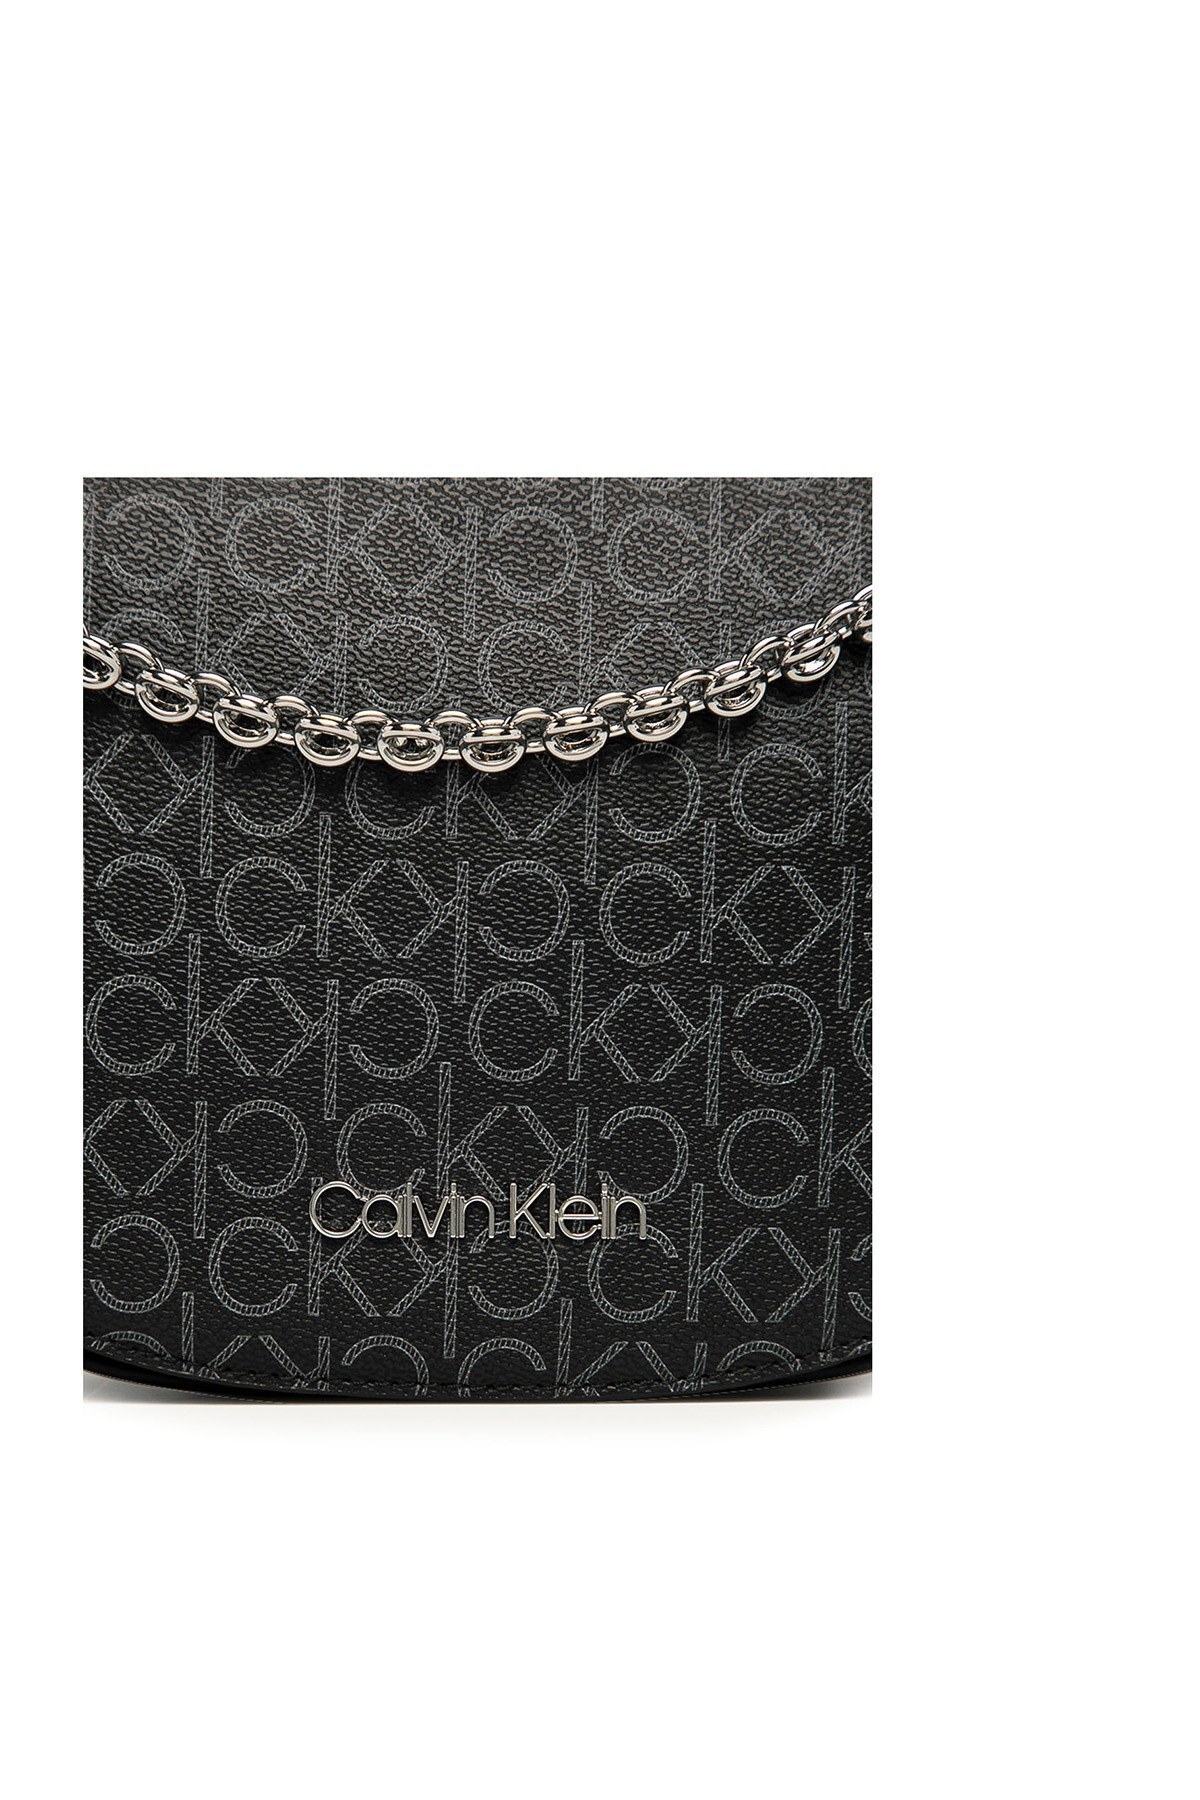 Calvin Klein Logo Baskılı Ayarlanabilir Askılı Kadın Çanta K60K607133 0GX SİYAH